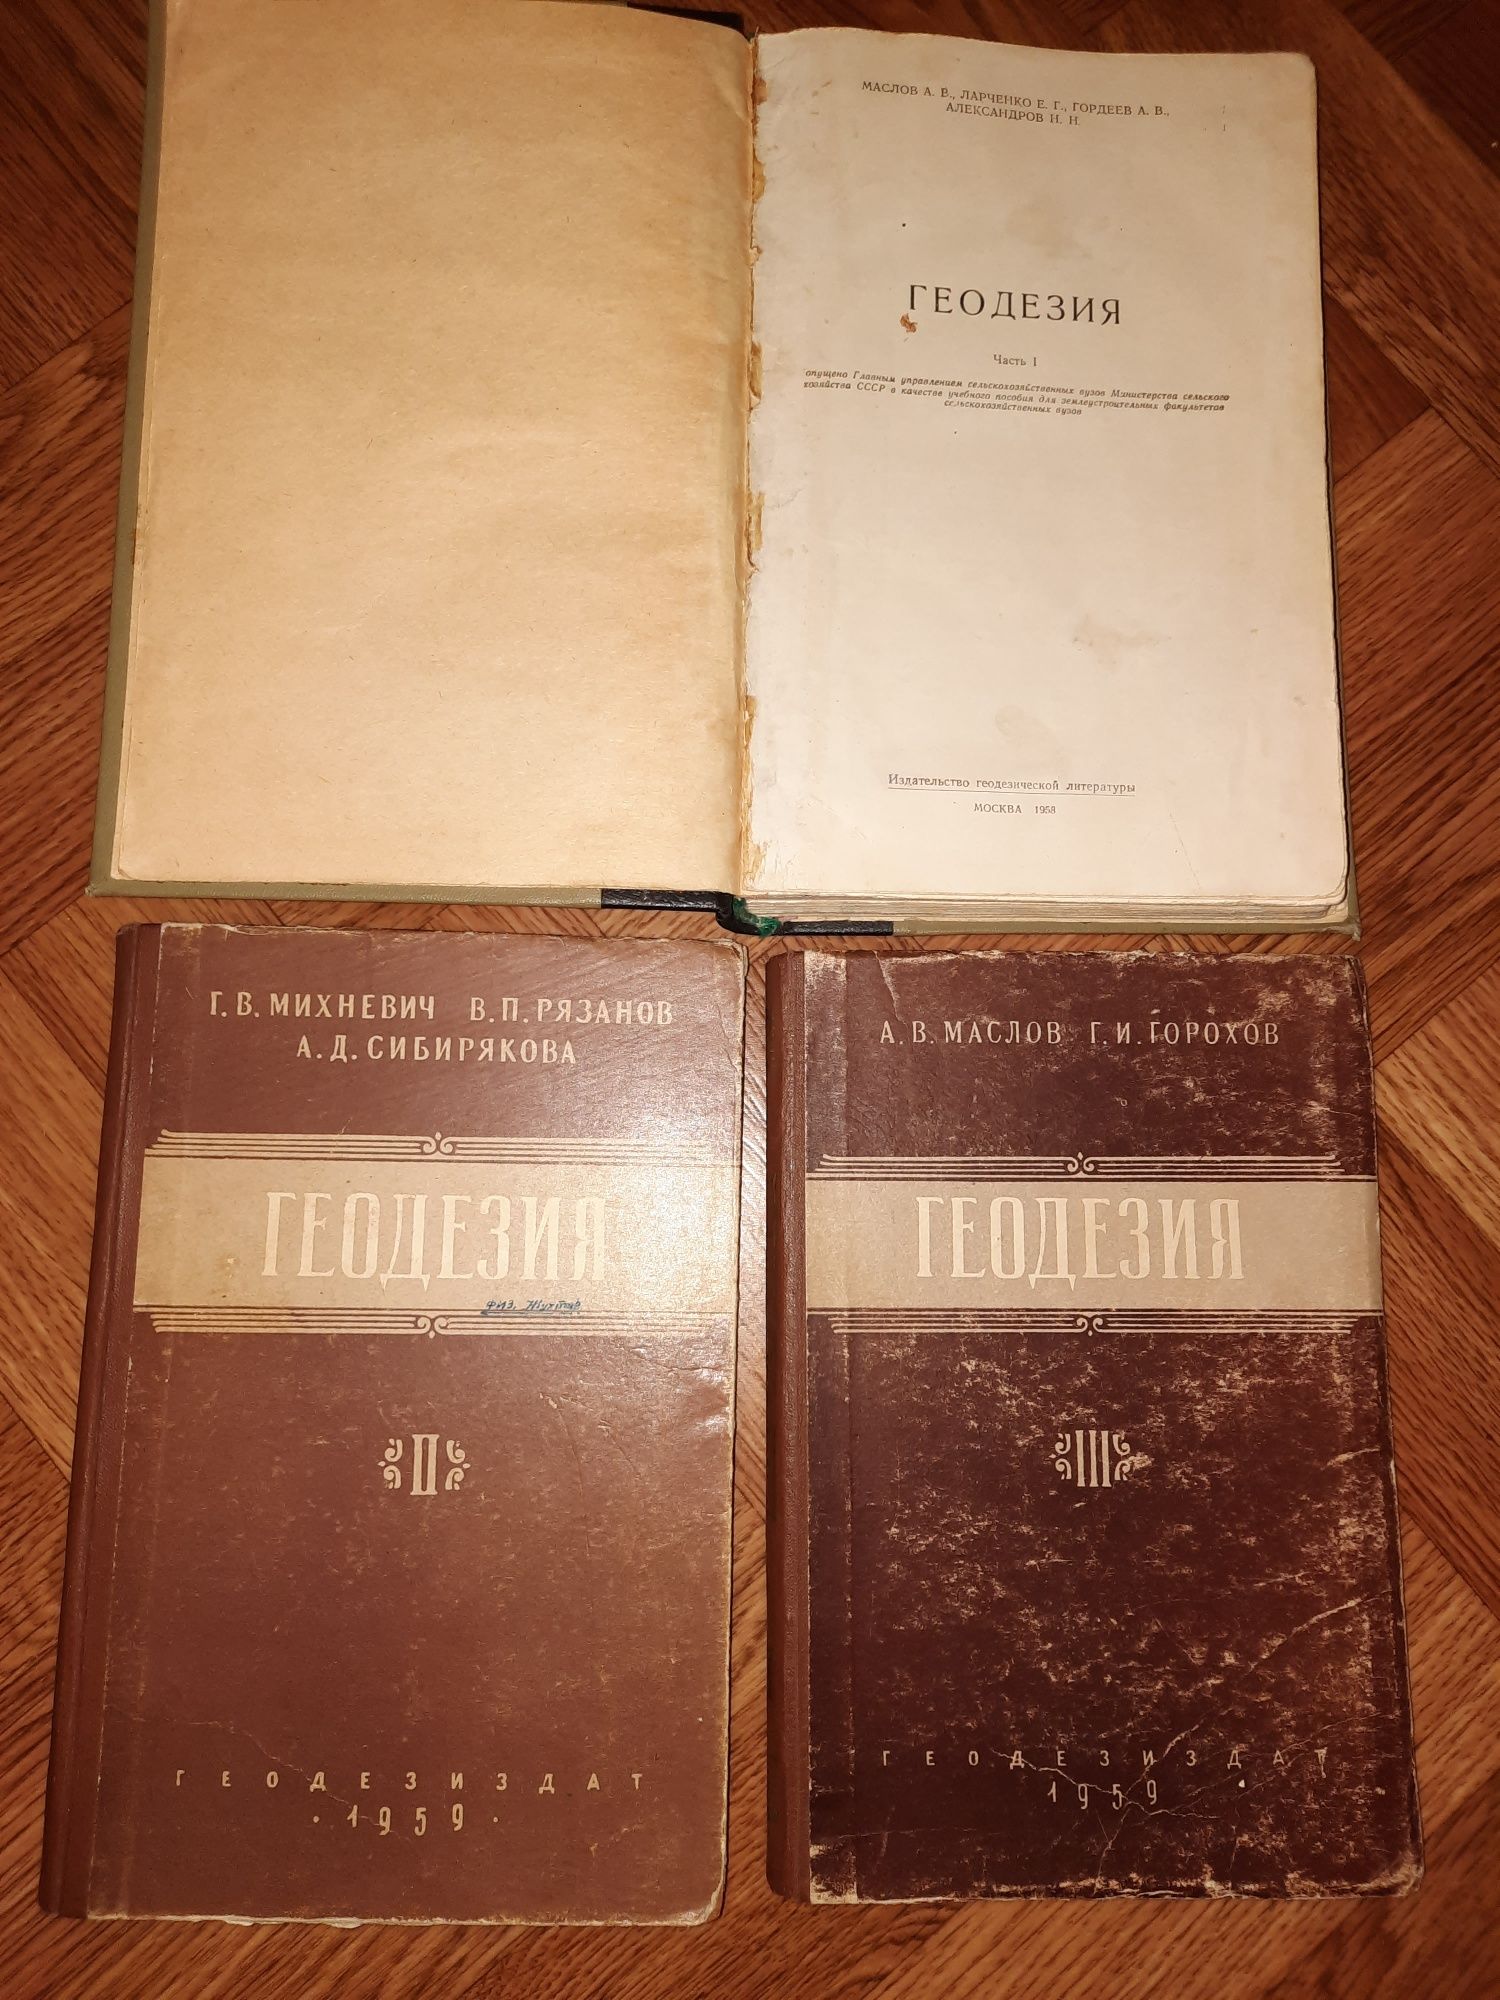 Геодезия 3 тома 1958 и 1959гг